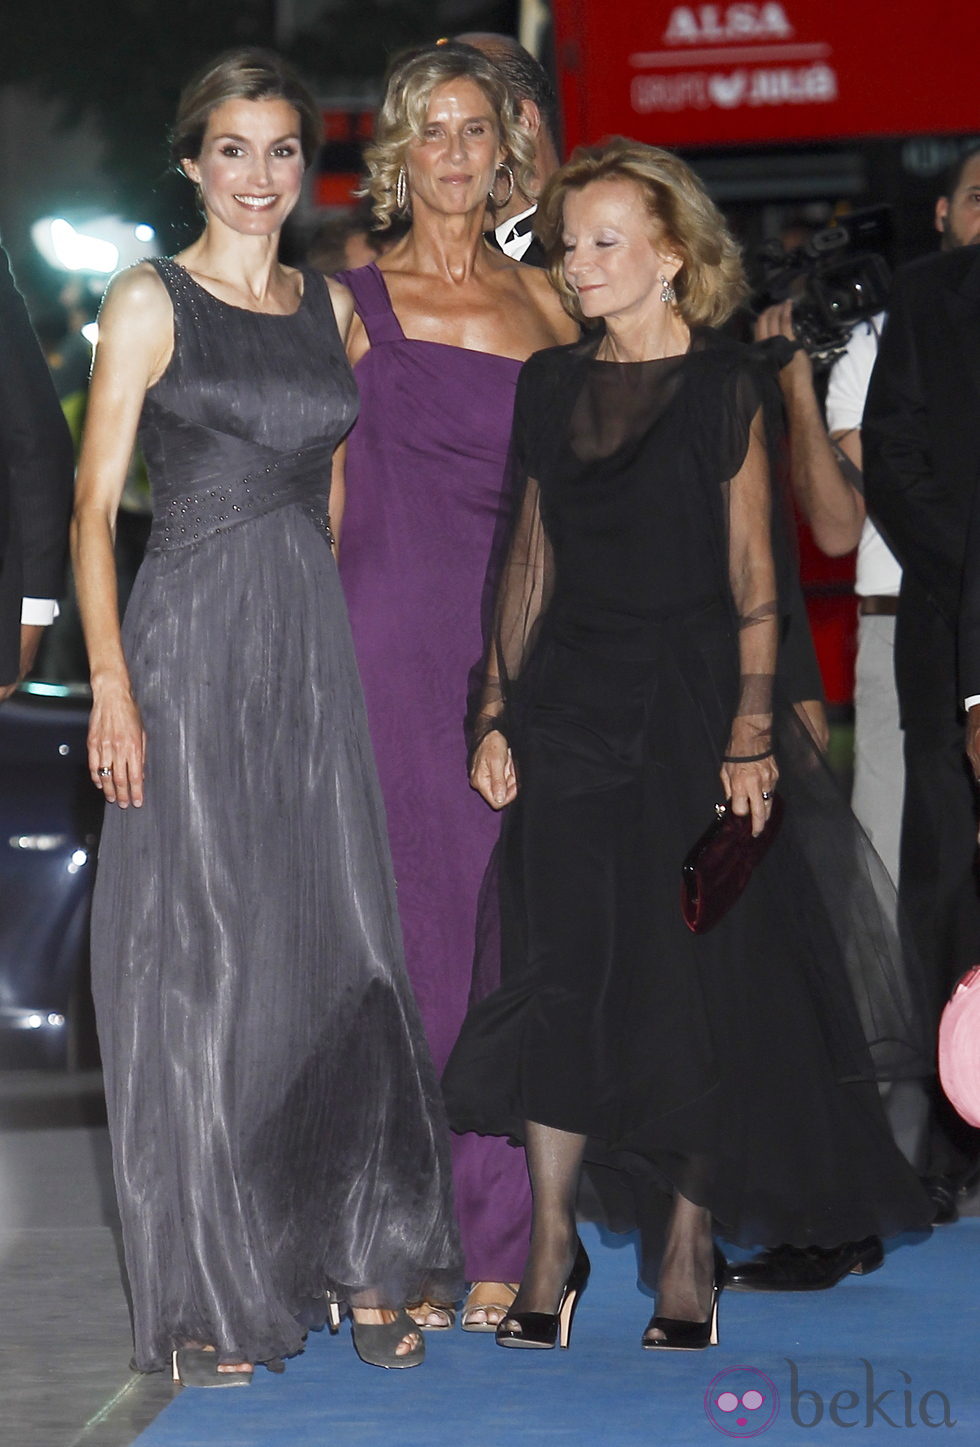 La Princesa Letizia, Cristina Garmendia y Elena Salgado en la cena del 25 aniversario de 'Expansión'